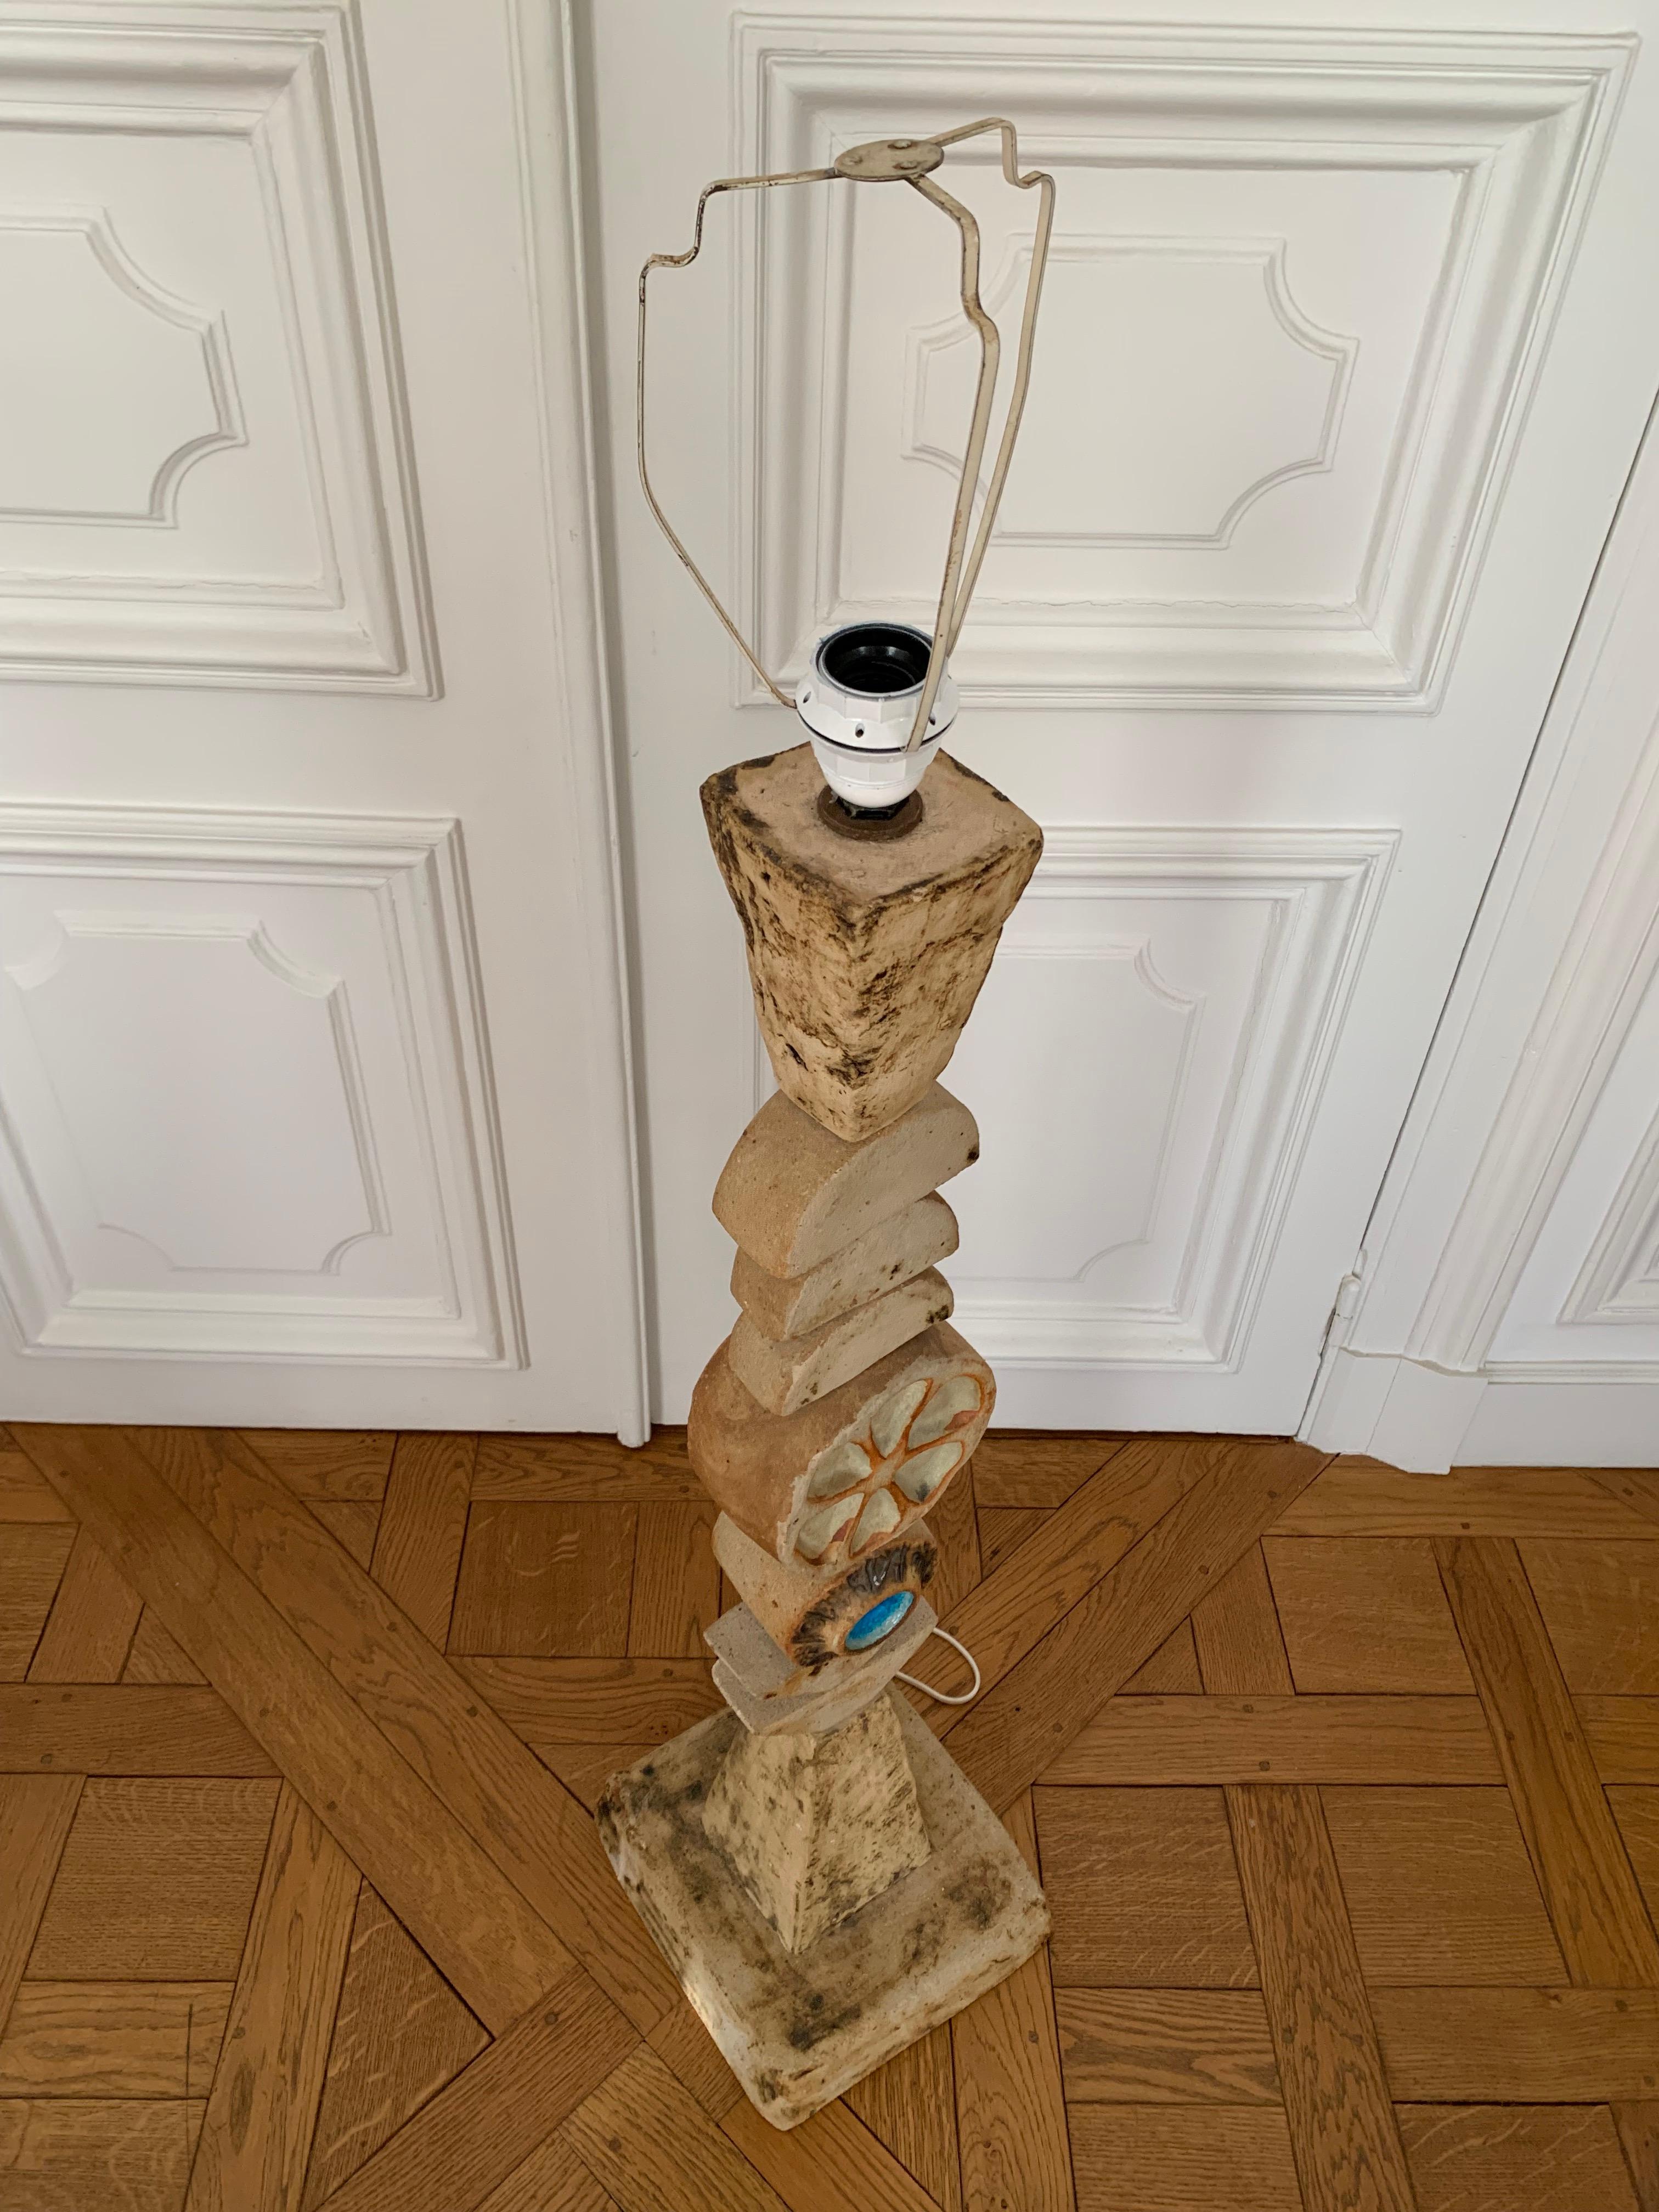 Totemlampe von Bernard Rooke England 1960
Abmessung mit Schirm : 150 cm Höhe Durchmesser 40 cm ohne Schirm 117 cm Höhe und 26 cm Durchmesser 
Dieser Entwurf ist ein frühes Beispiel für Rookes Arbeit aus den 1960er Jahren. Ein skulpturales Stück,